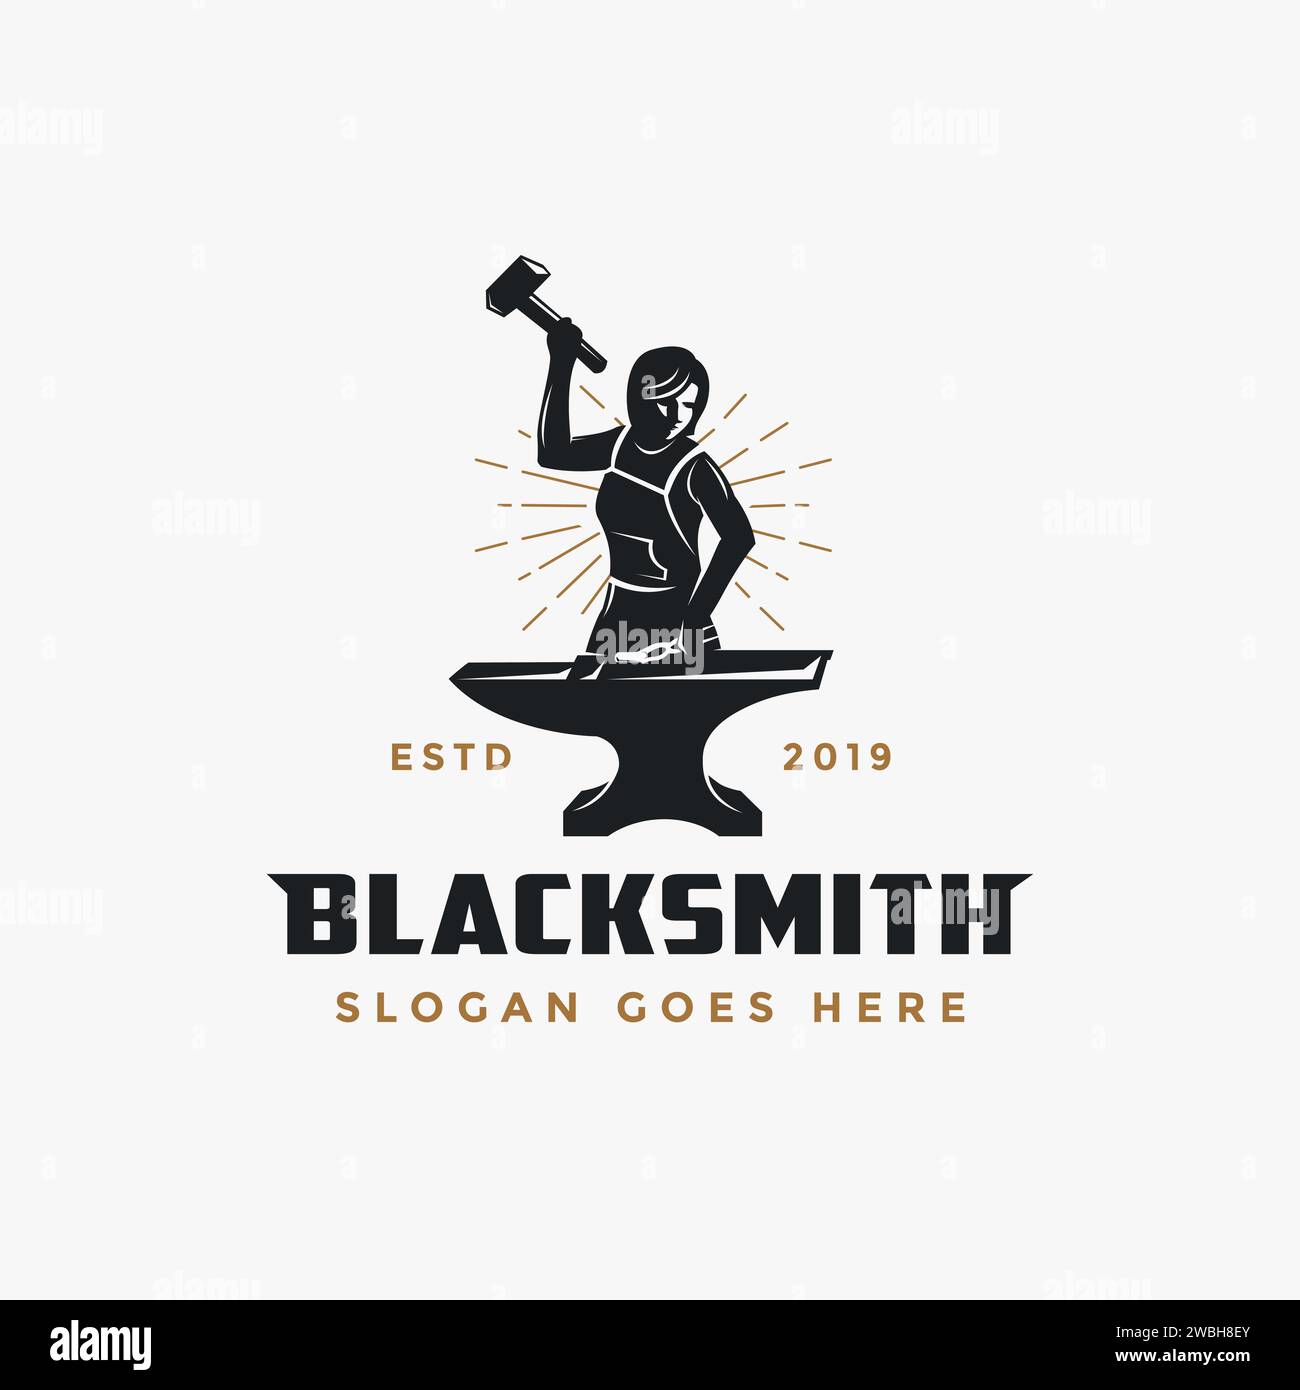 The Blacksmith Logo flavicon.jpg